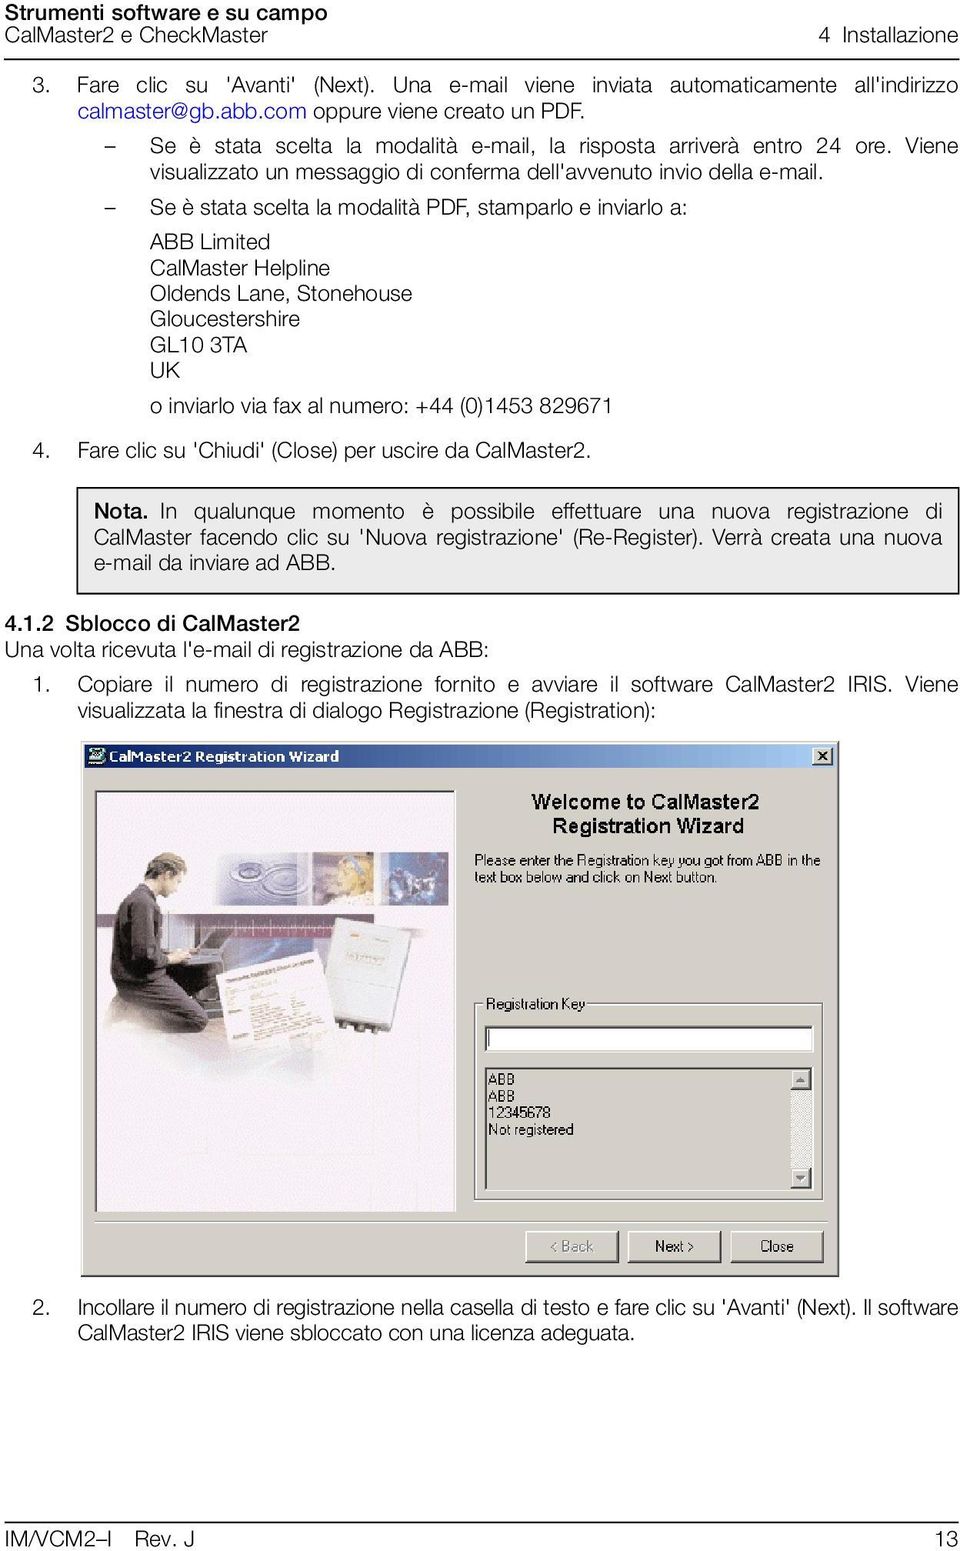 Se è stata scelta la modalità PDF, stamparlo e inviarlo a: ABB Limited CalMaster Helpline Oldends Lane, Stonehouse Gloucestershire GL10 3TA UK o inviarlo via fax al numero: +44 (0)1453 829671 4.